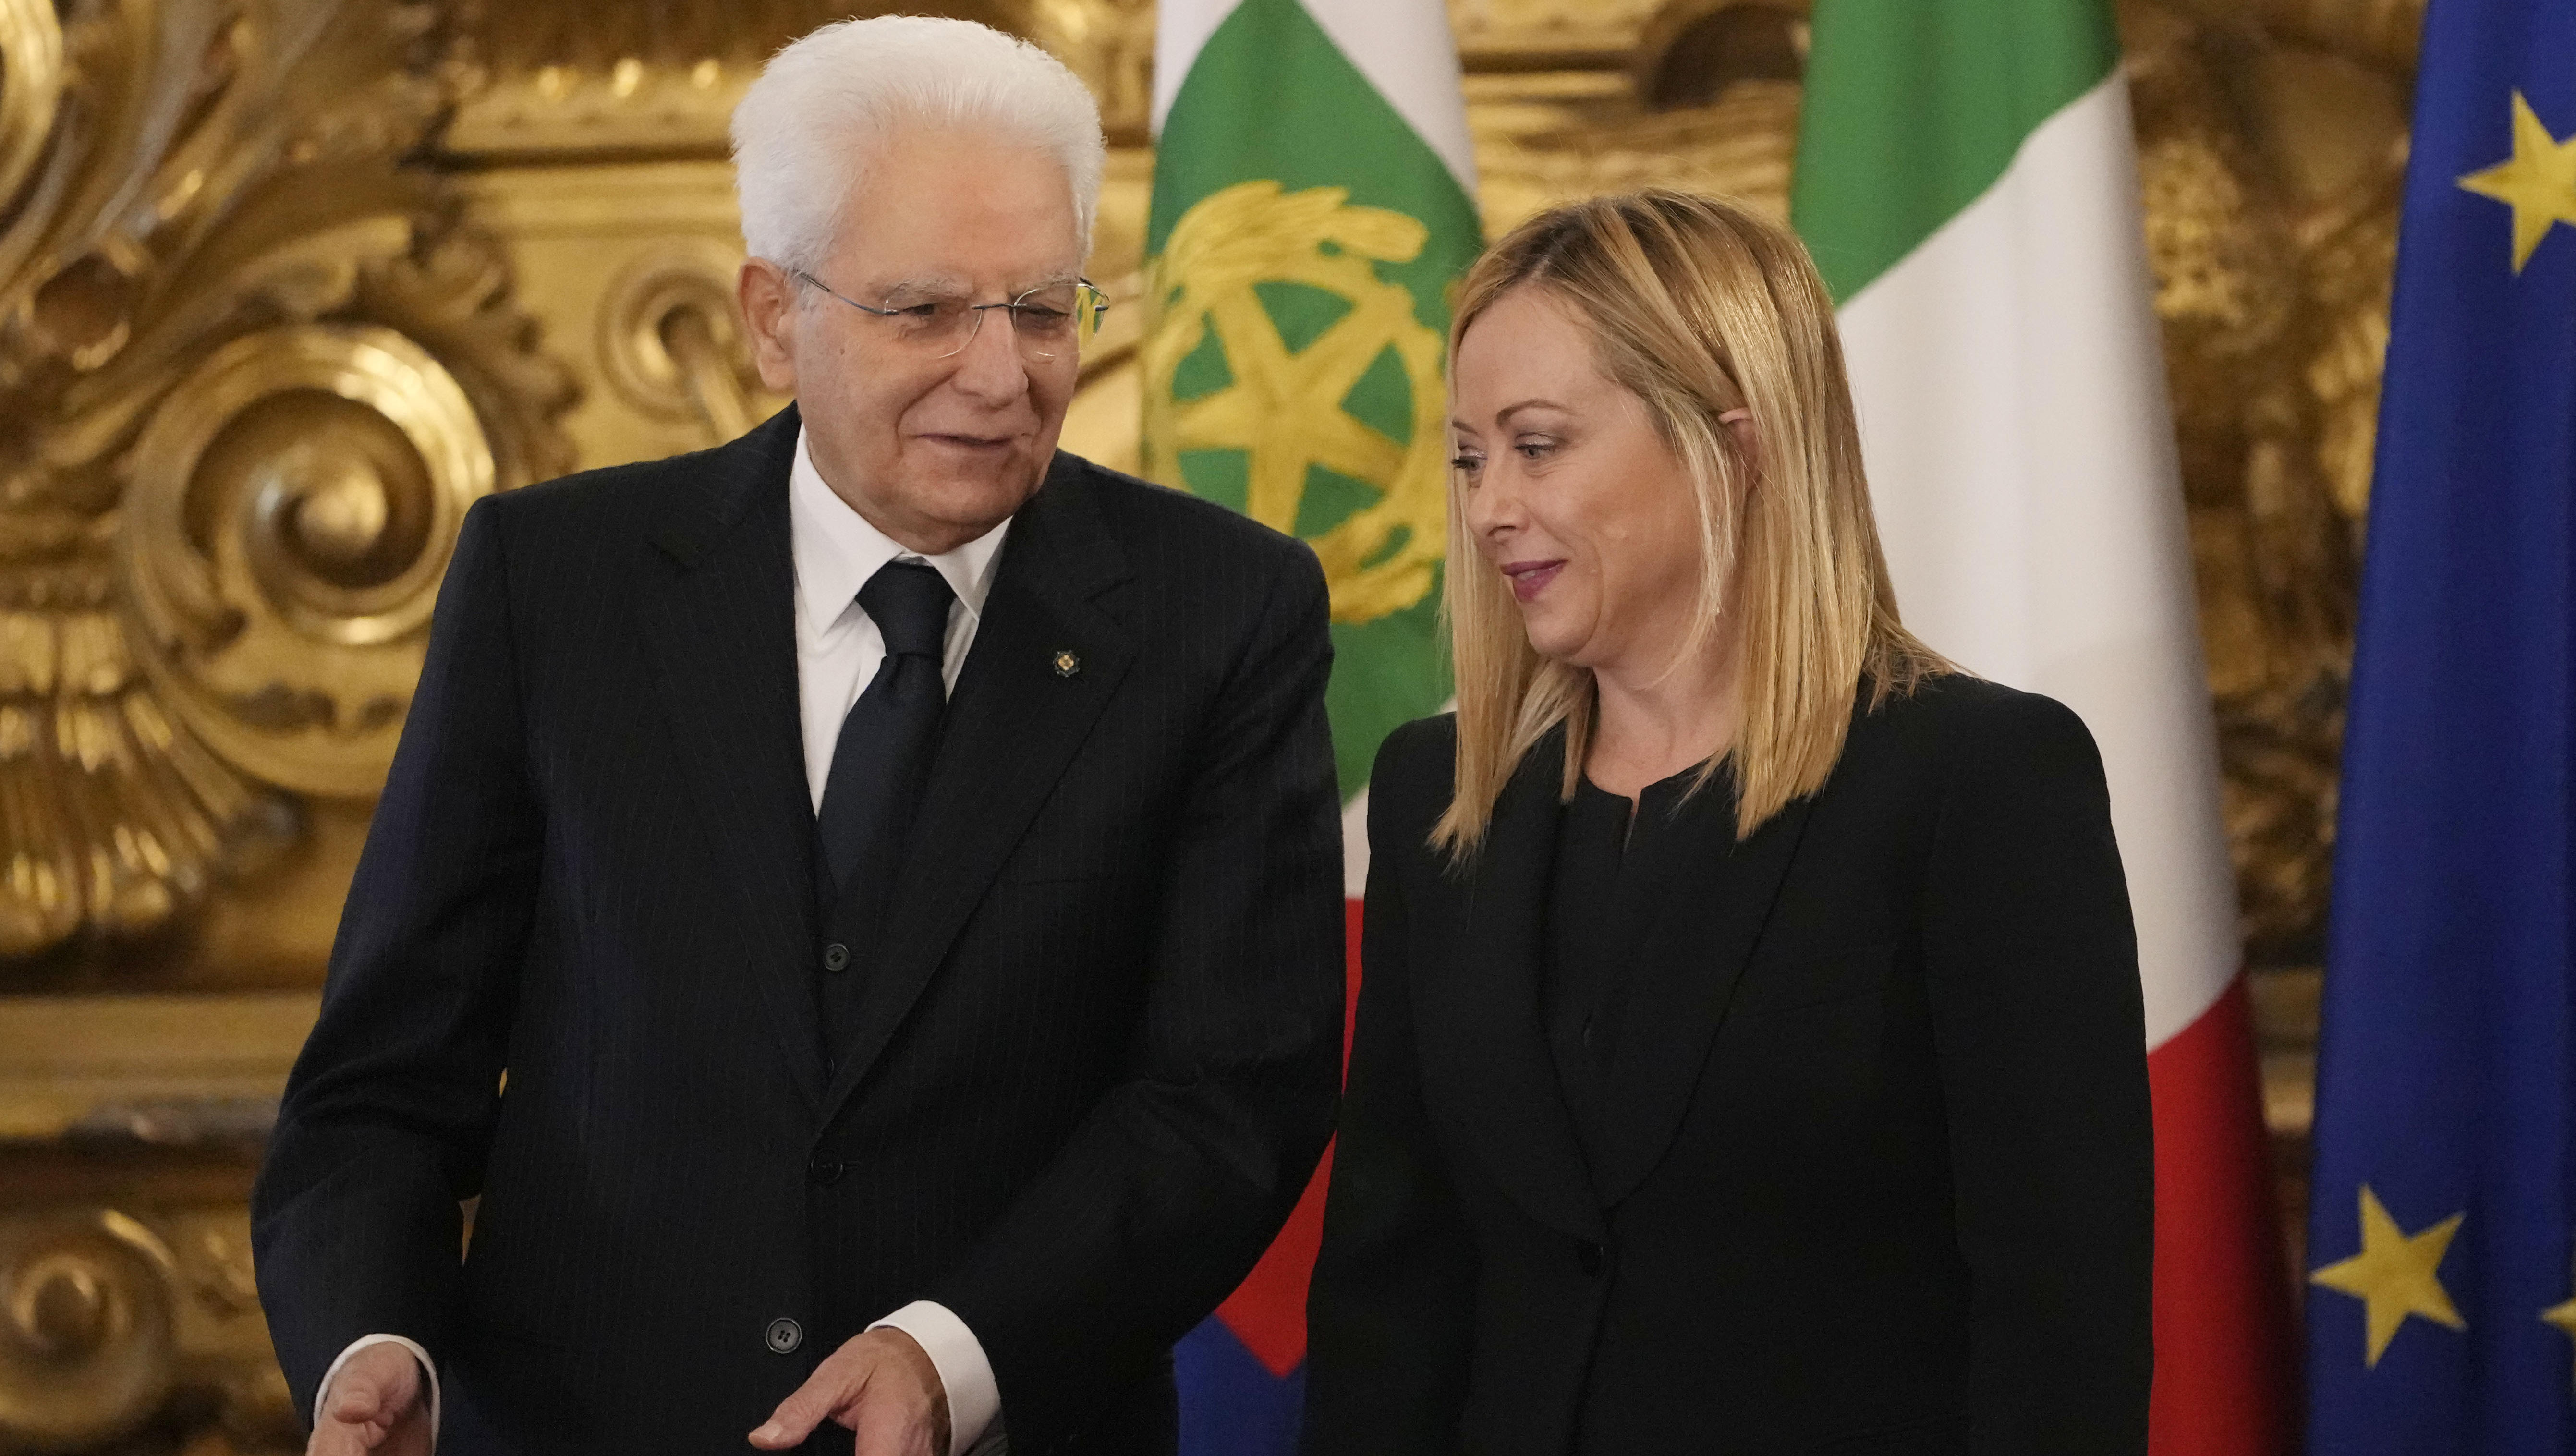 Italien: Meloni als neue Regierungschefin vereidigt